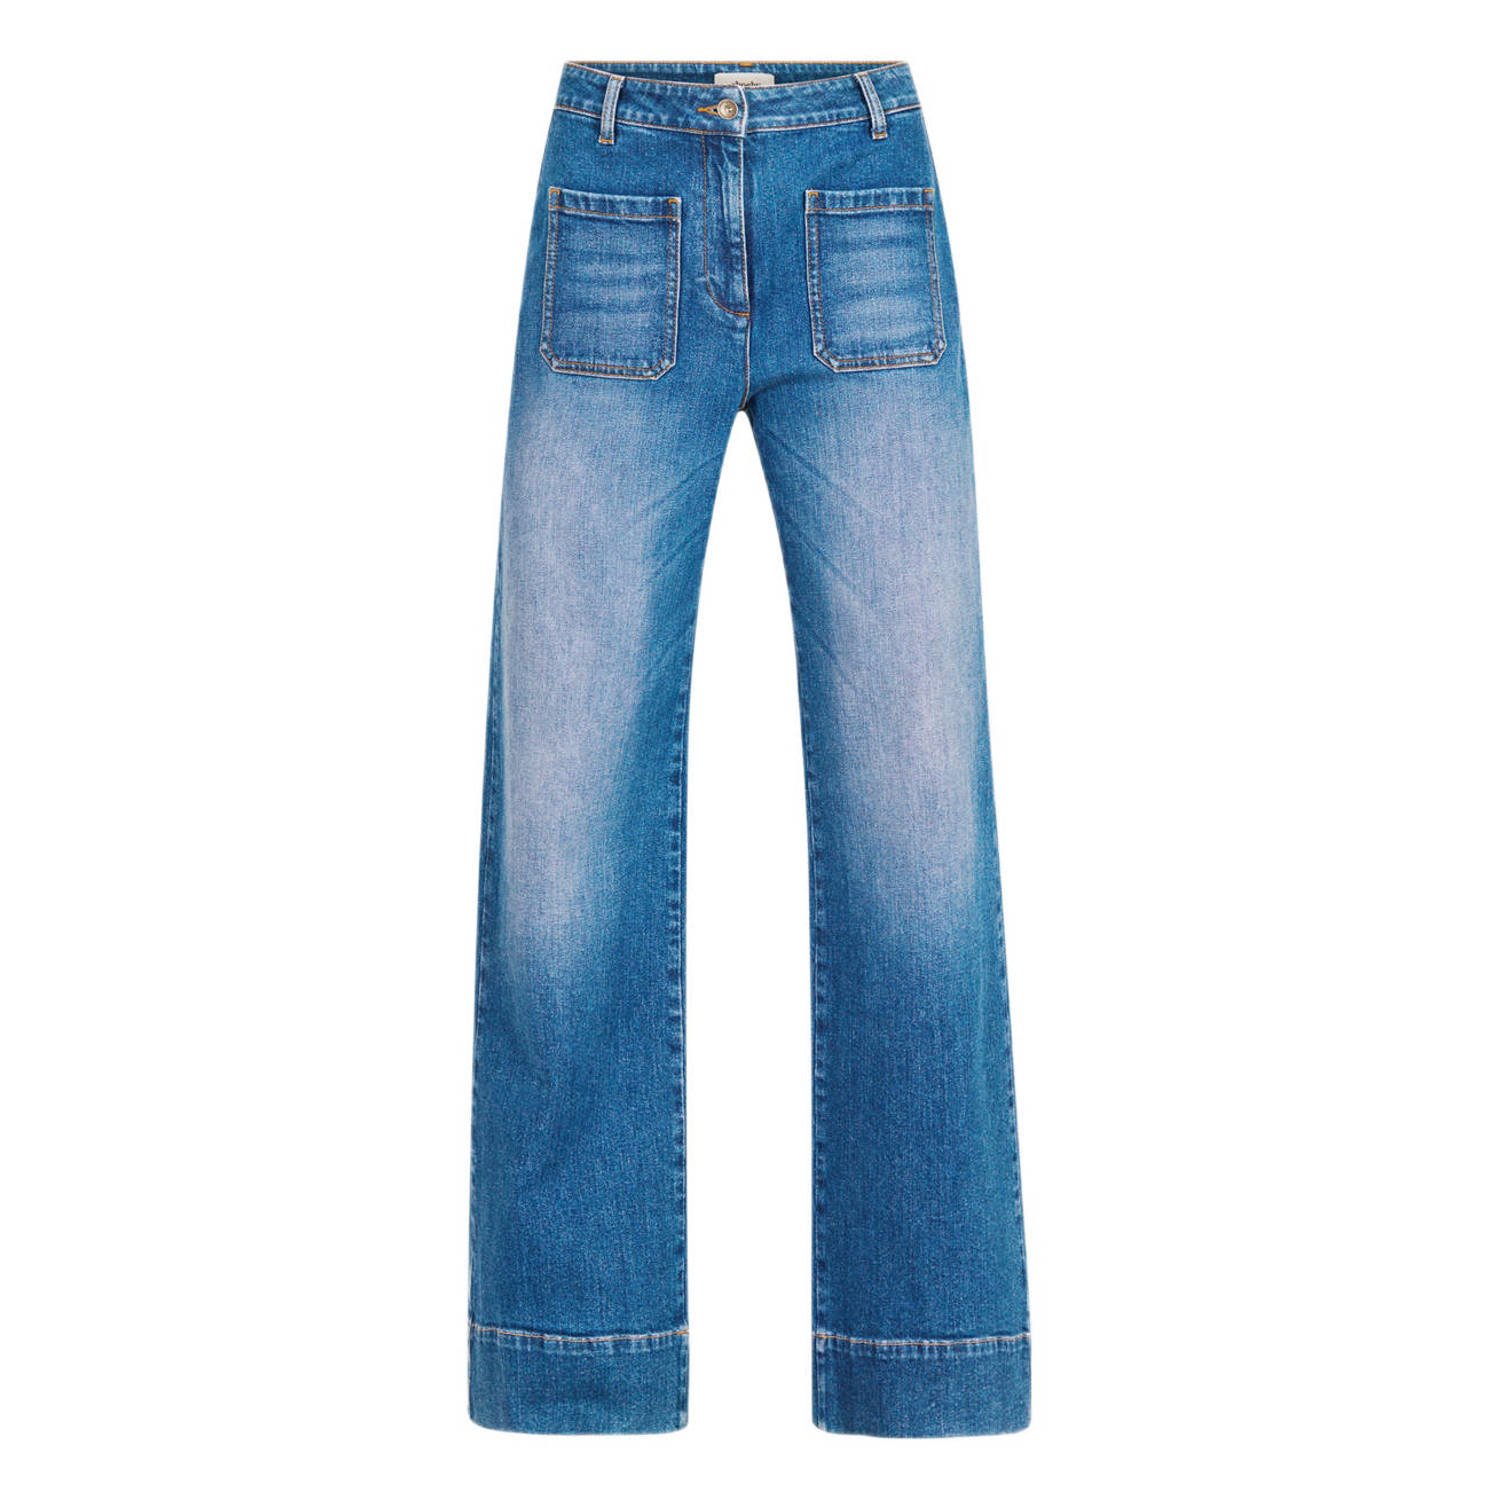 Shoeby high waist wide leg jeans dark blue denim